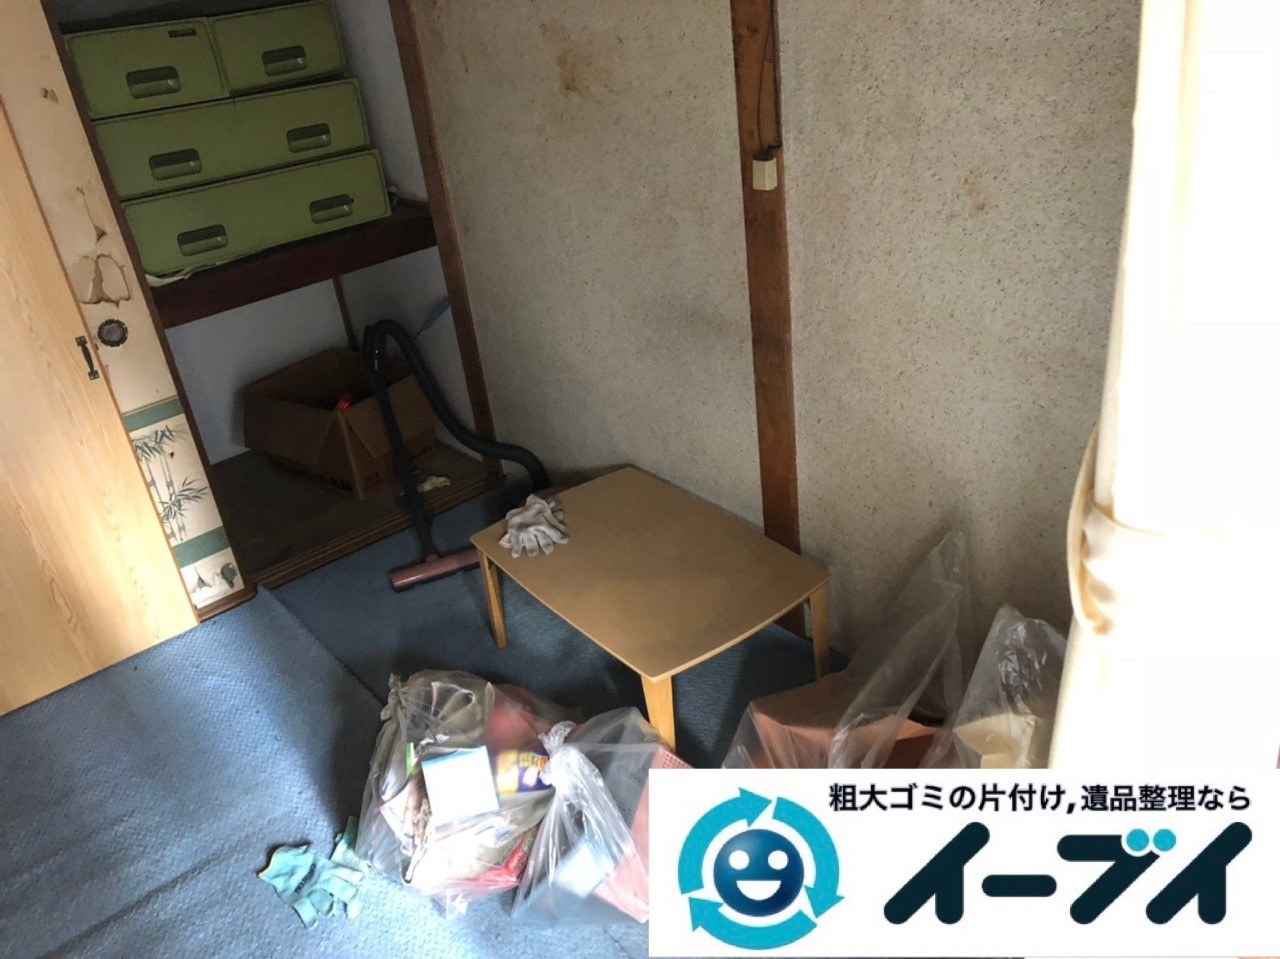 2019年1月21日大阪府大阪市此花区で家具処分や家電処分、押し入れの片付け作業。写真3